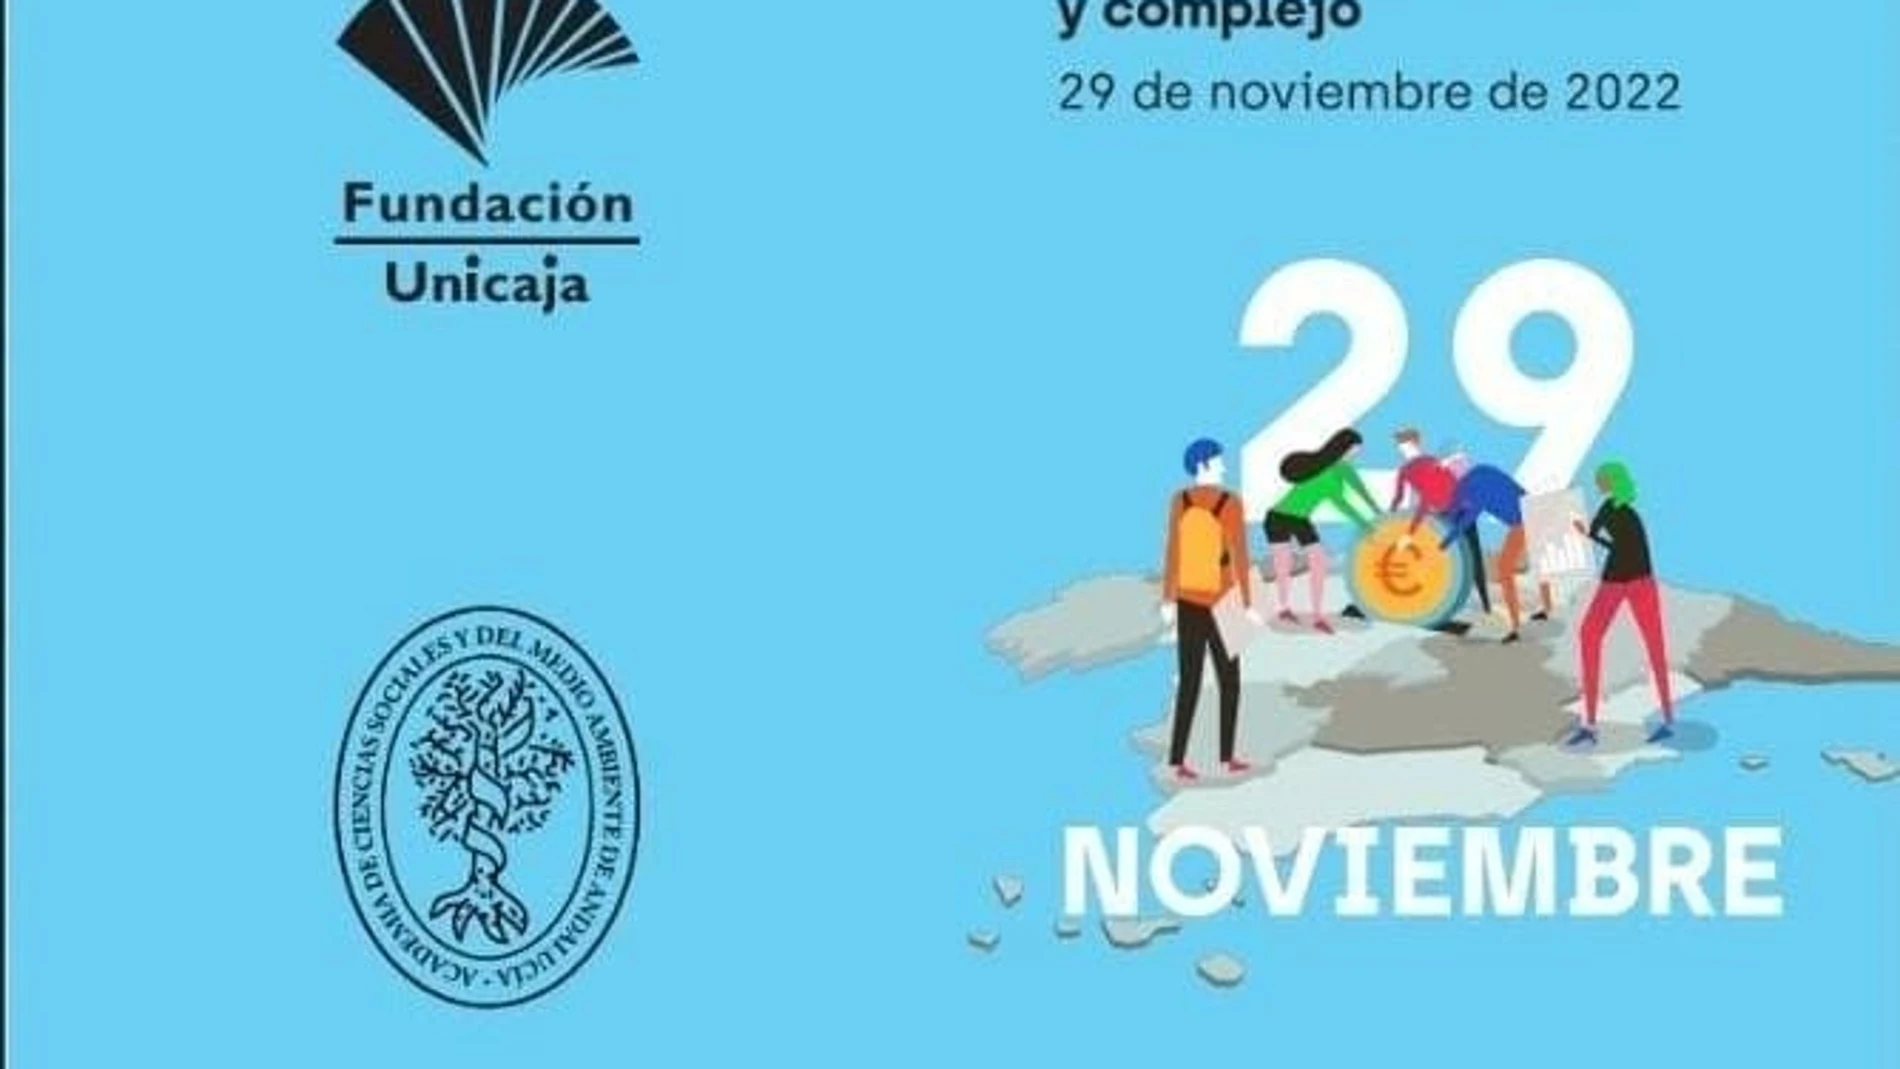 El encuentro tendrá lugar el 29 de noviembre en el salón de actos de Unicaja, en Málaga